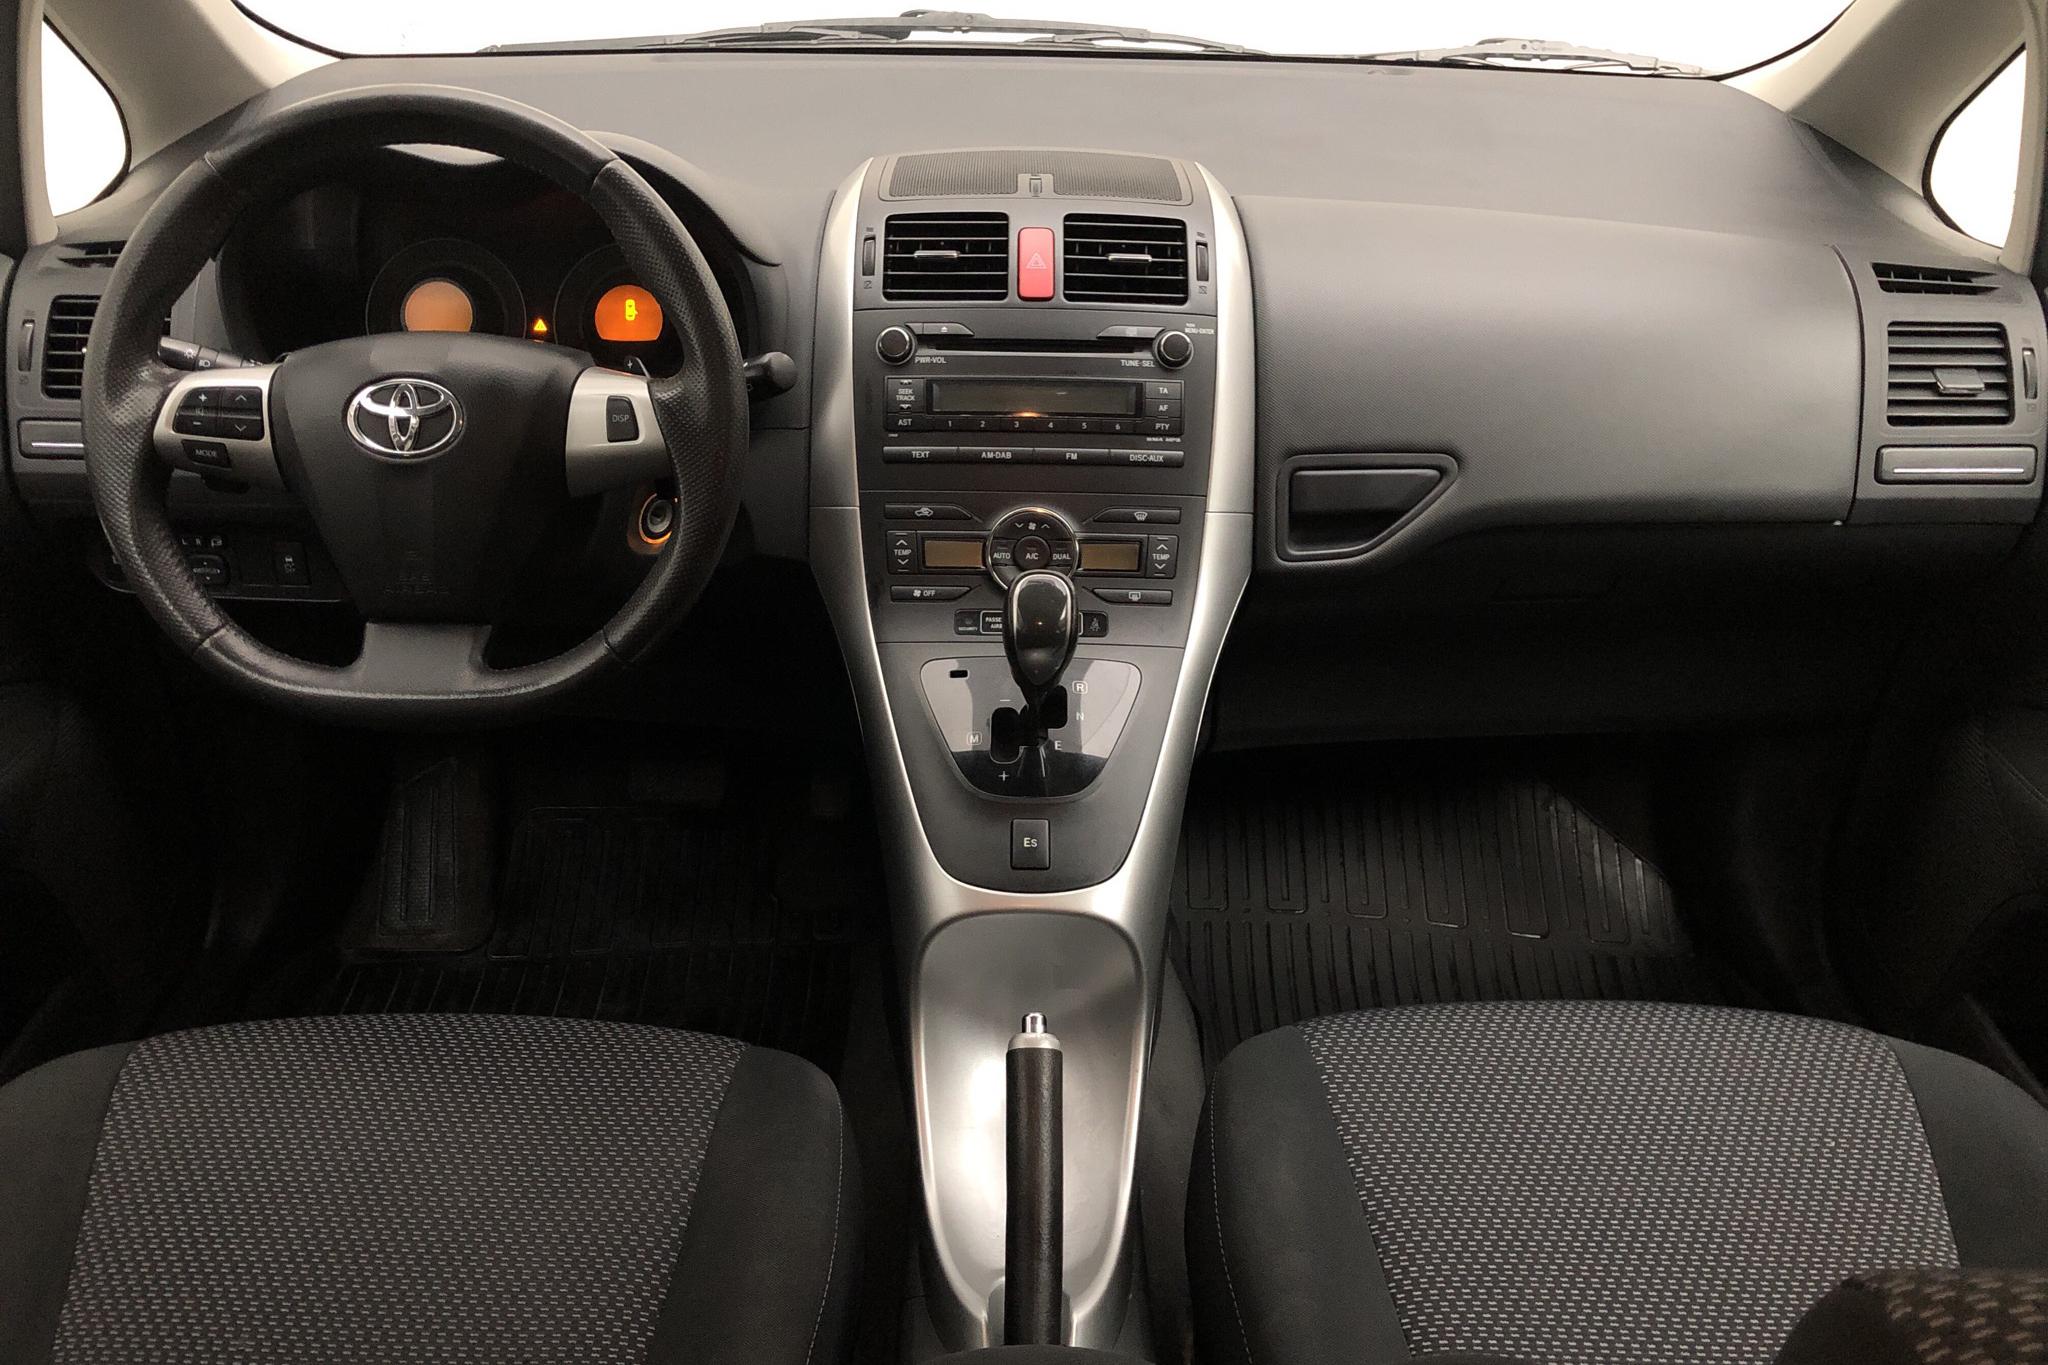 Toyota Auris 1.6 VVT-i 5dr (132hk) - 8 919 mil - Automat - silver - 2010